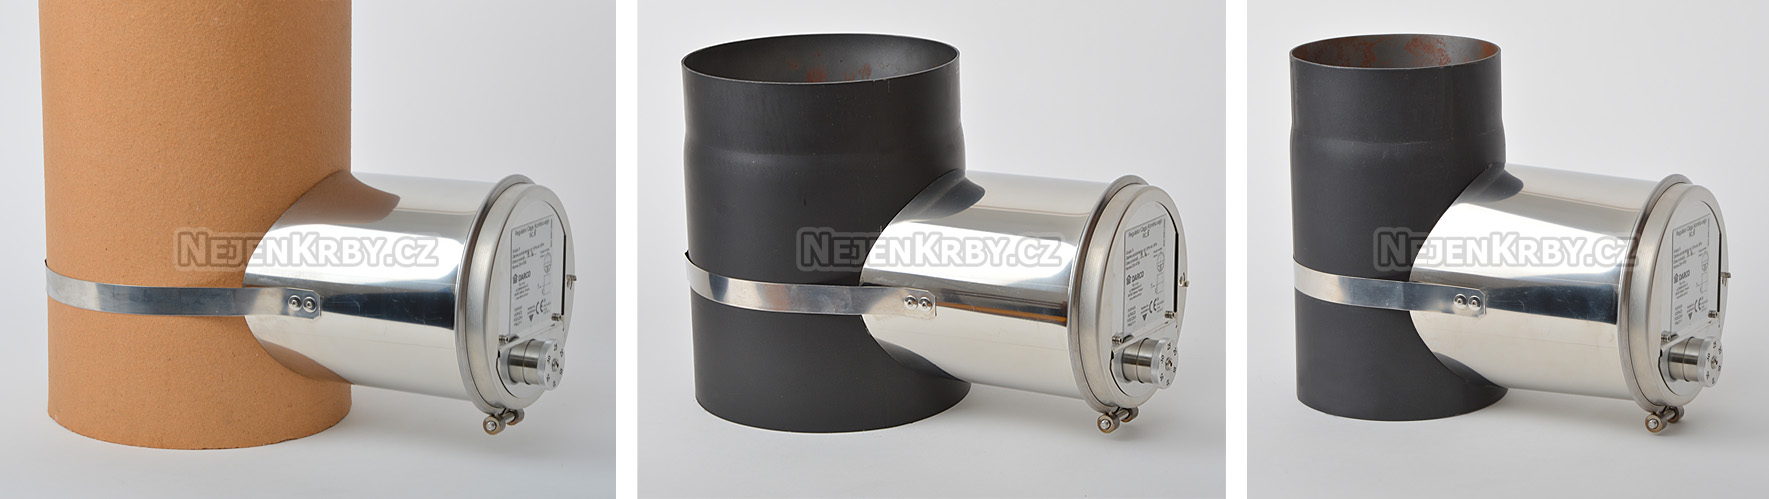 Regulátor na šamotovém průduchu 200 mm (vnější průměr 220 mm) a na trubce kouřovodu 200 mm a 150 mm